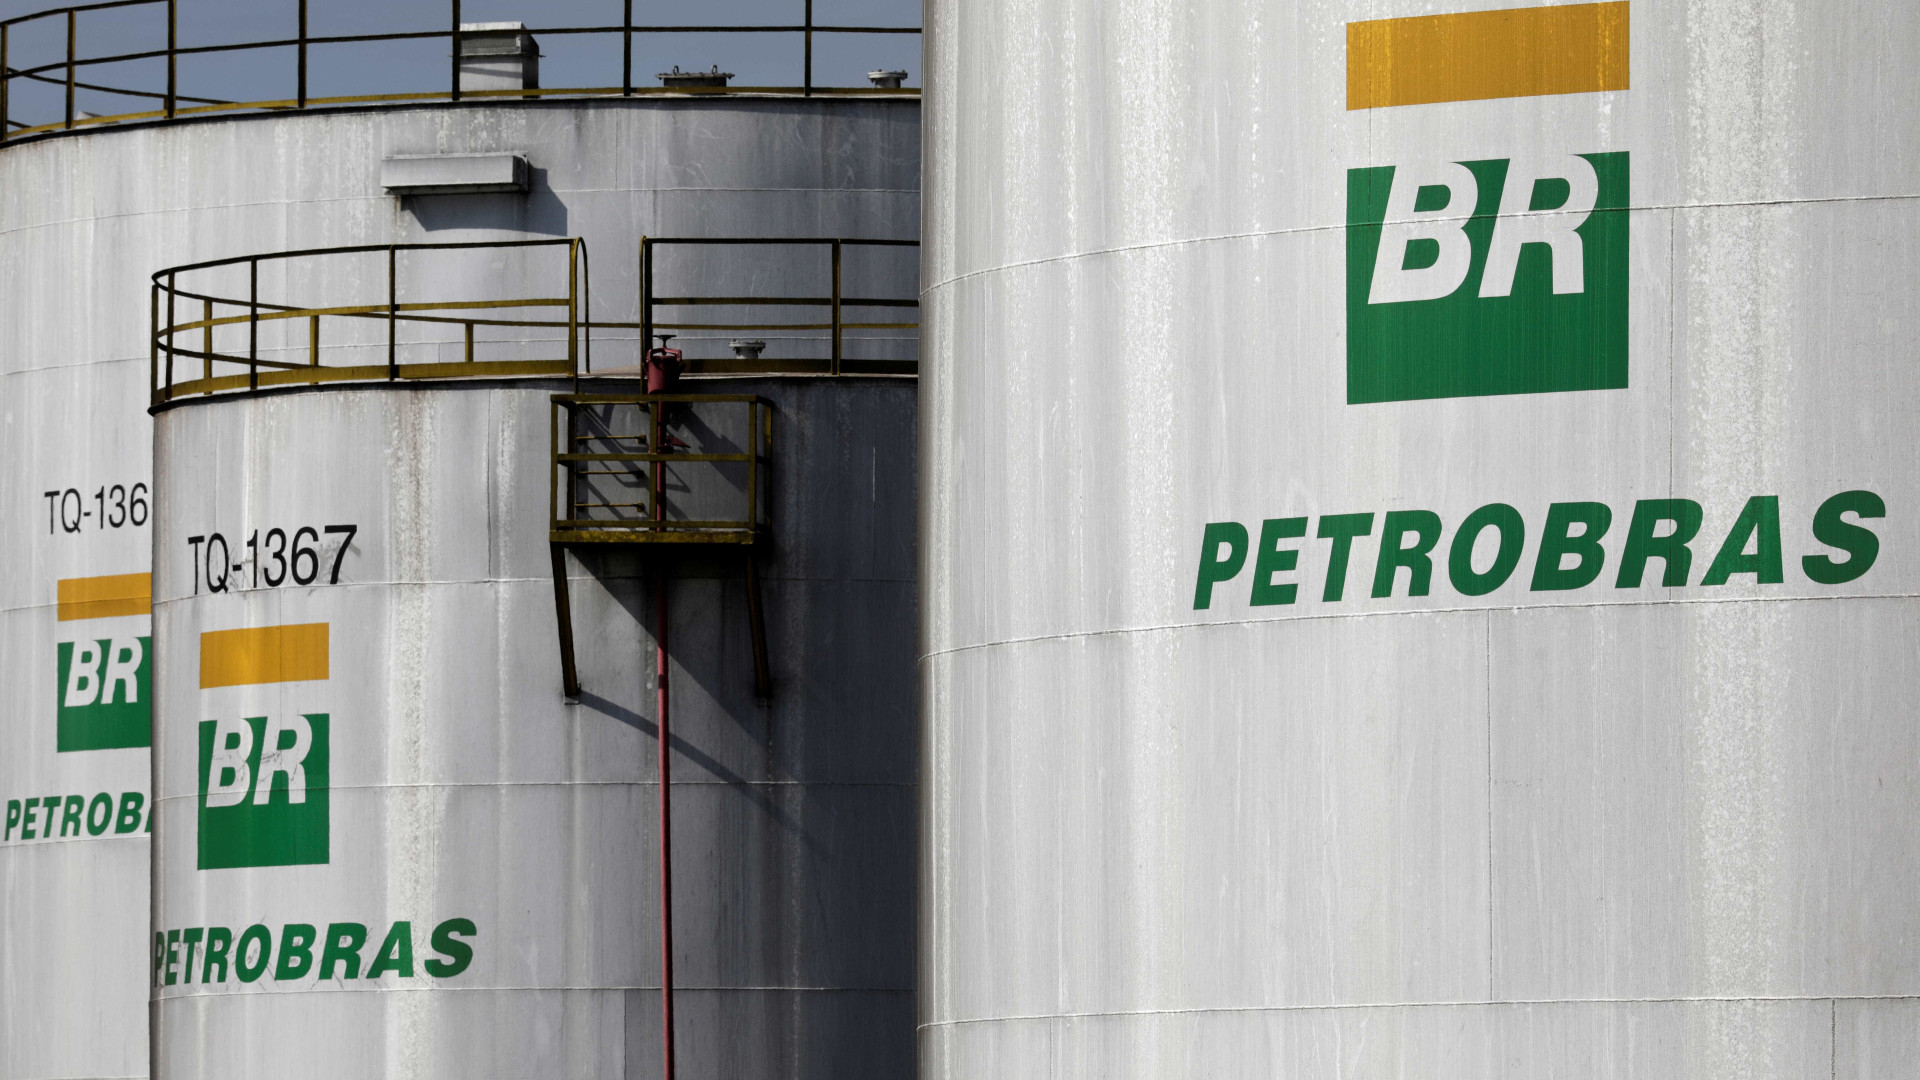 Novo presidente da Petrobras defende preços internacionais